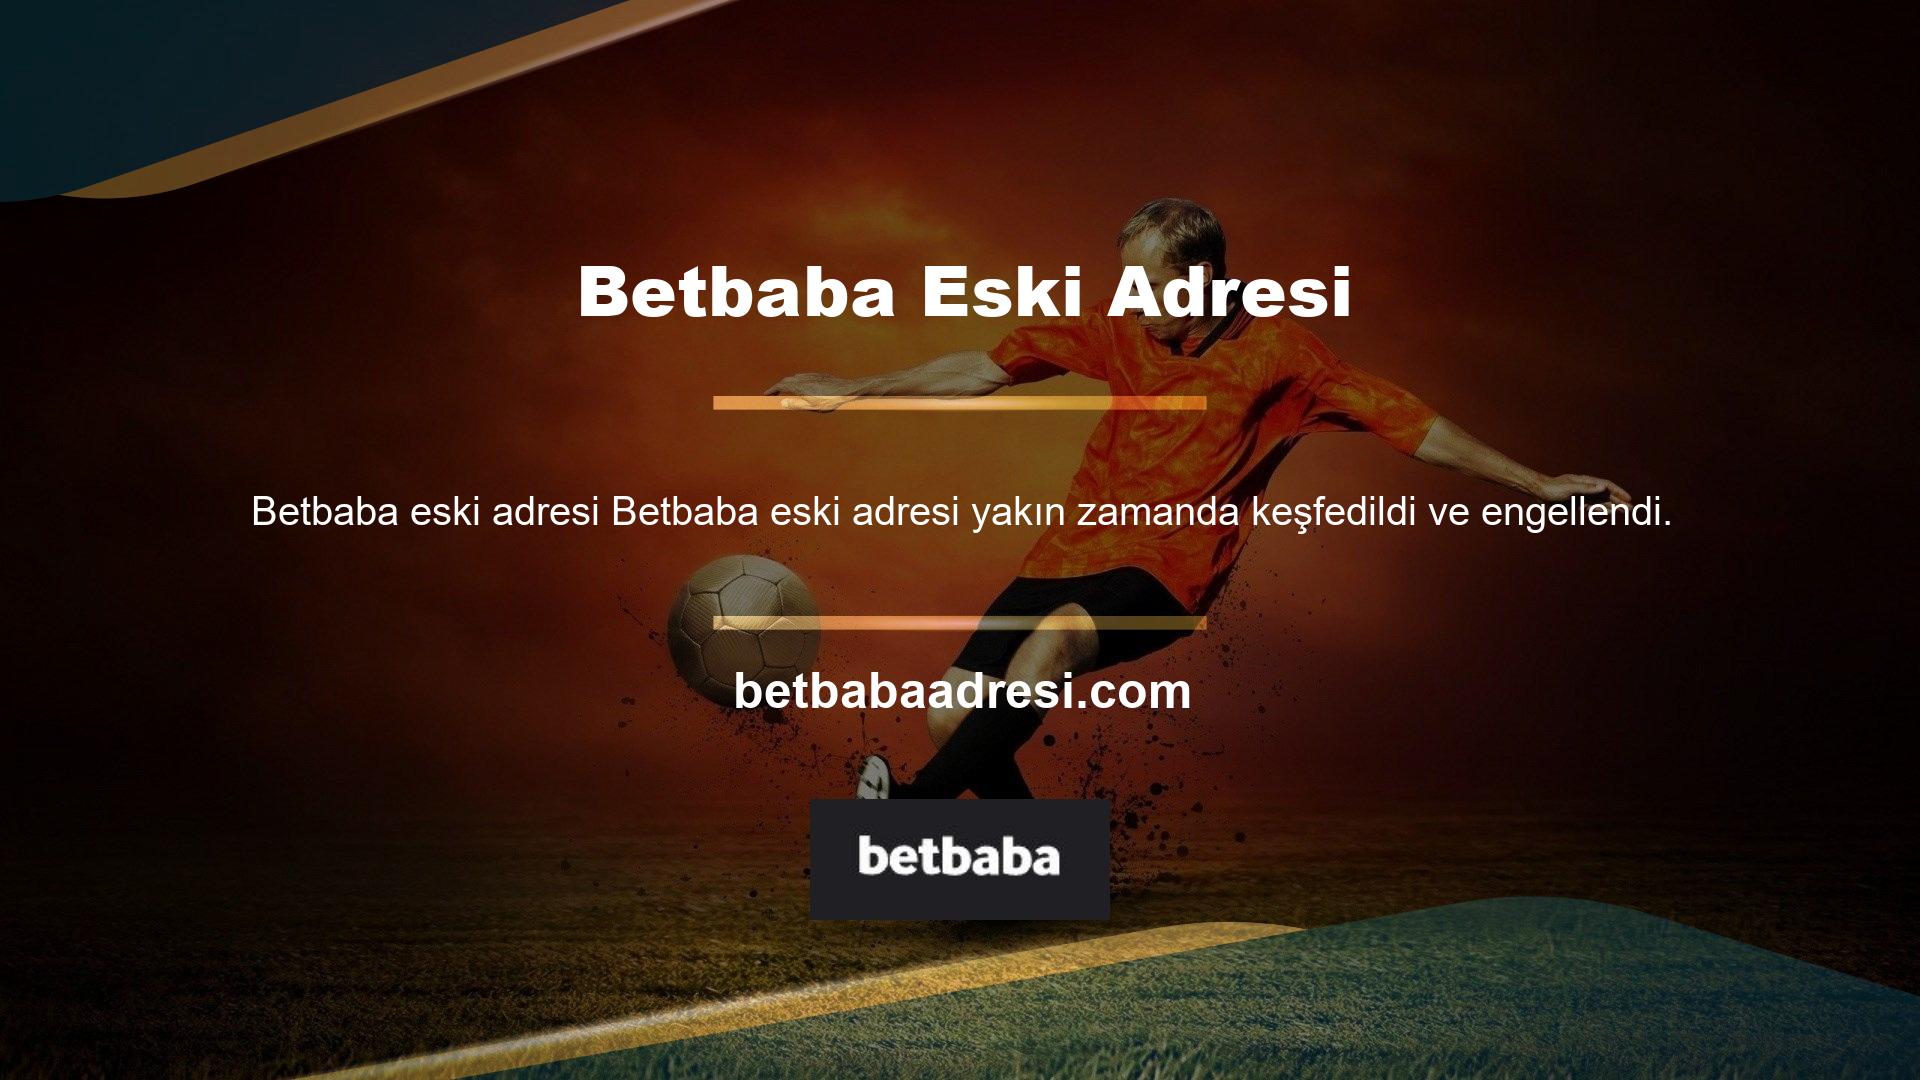 Betbaba yeni giriş adresi Betbaba